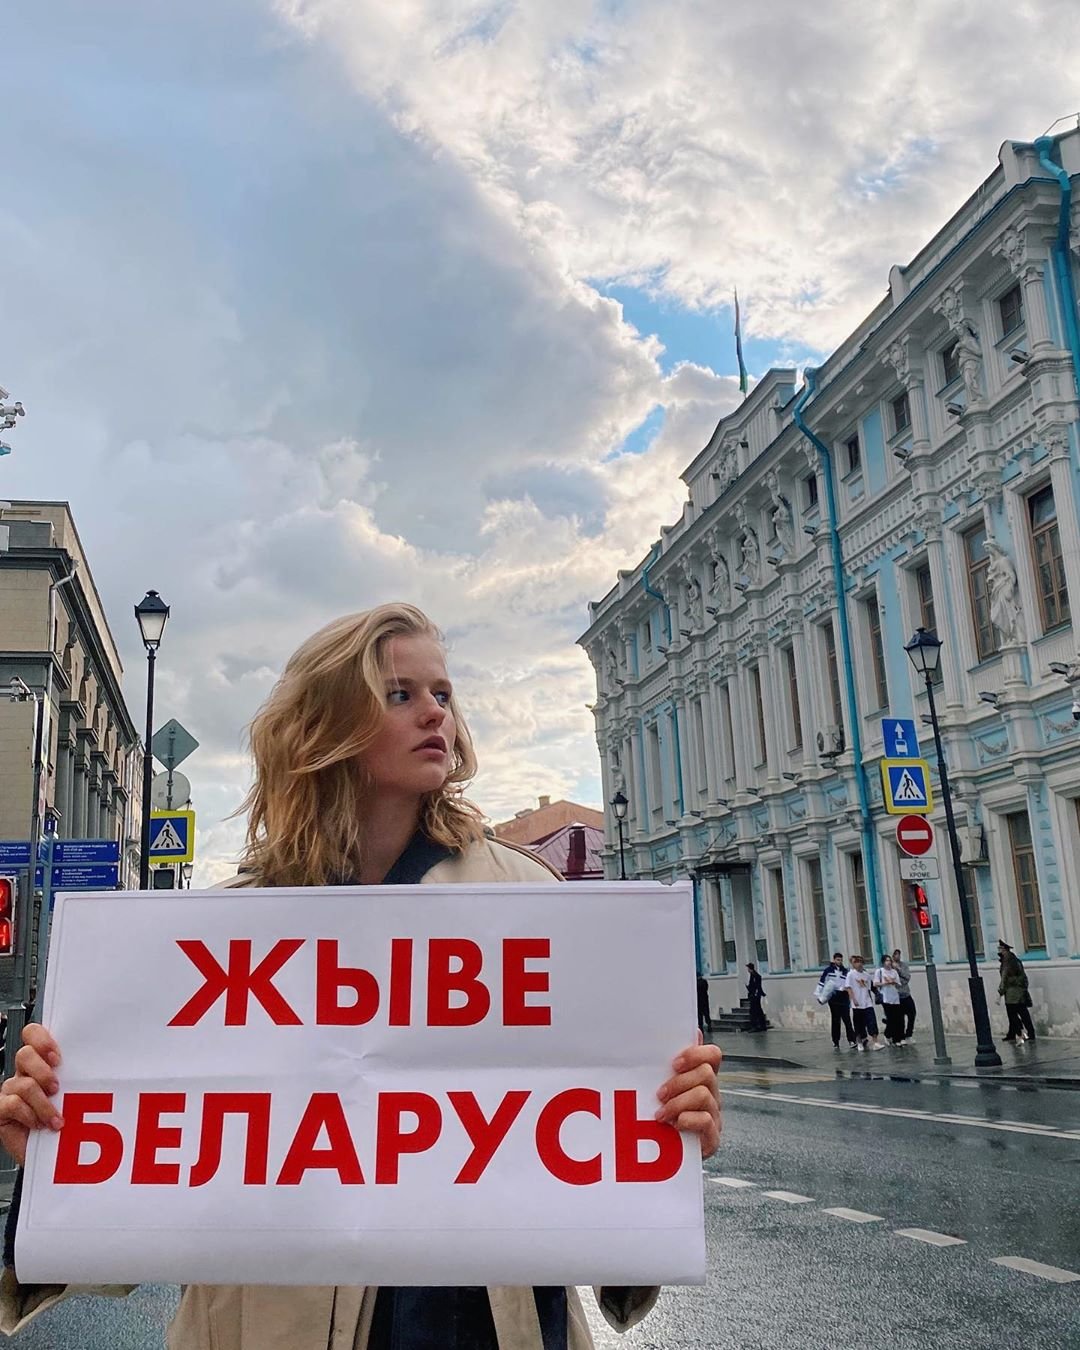 Александра Бортич отправилась на митинг в поддержку своего народа